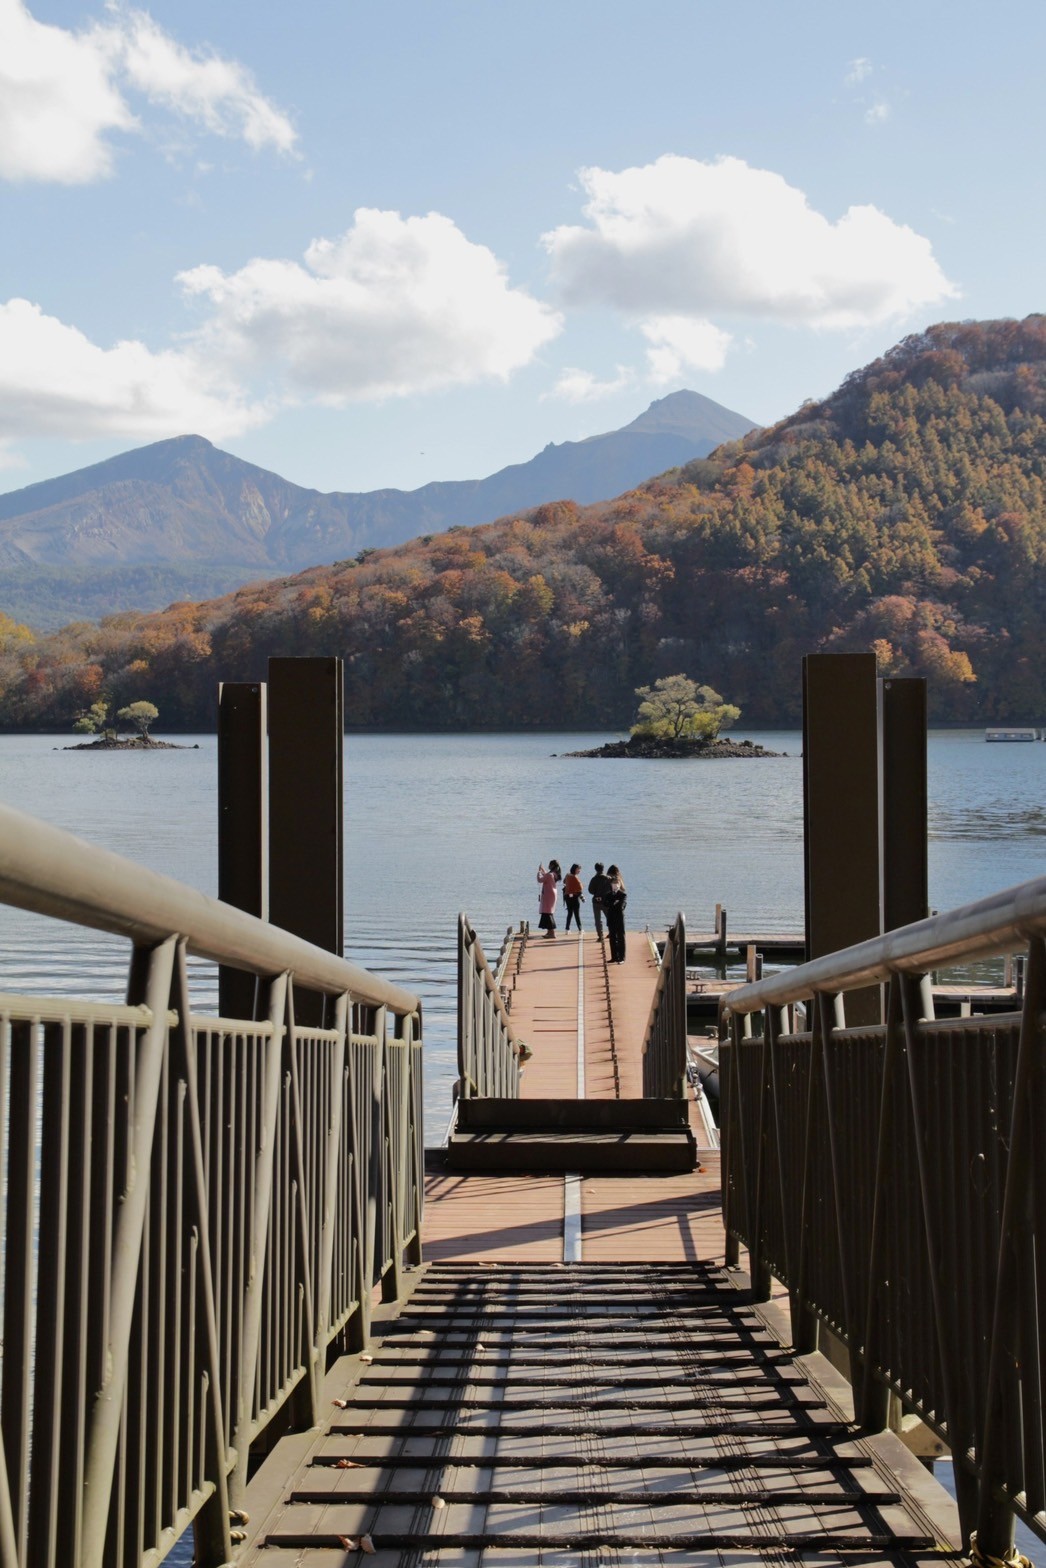 可以穿過棧橋更靠近湖面，遠看毛茸茸的山頭與平靜湖水。